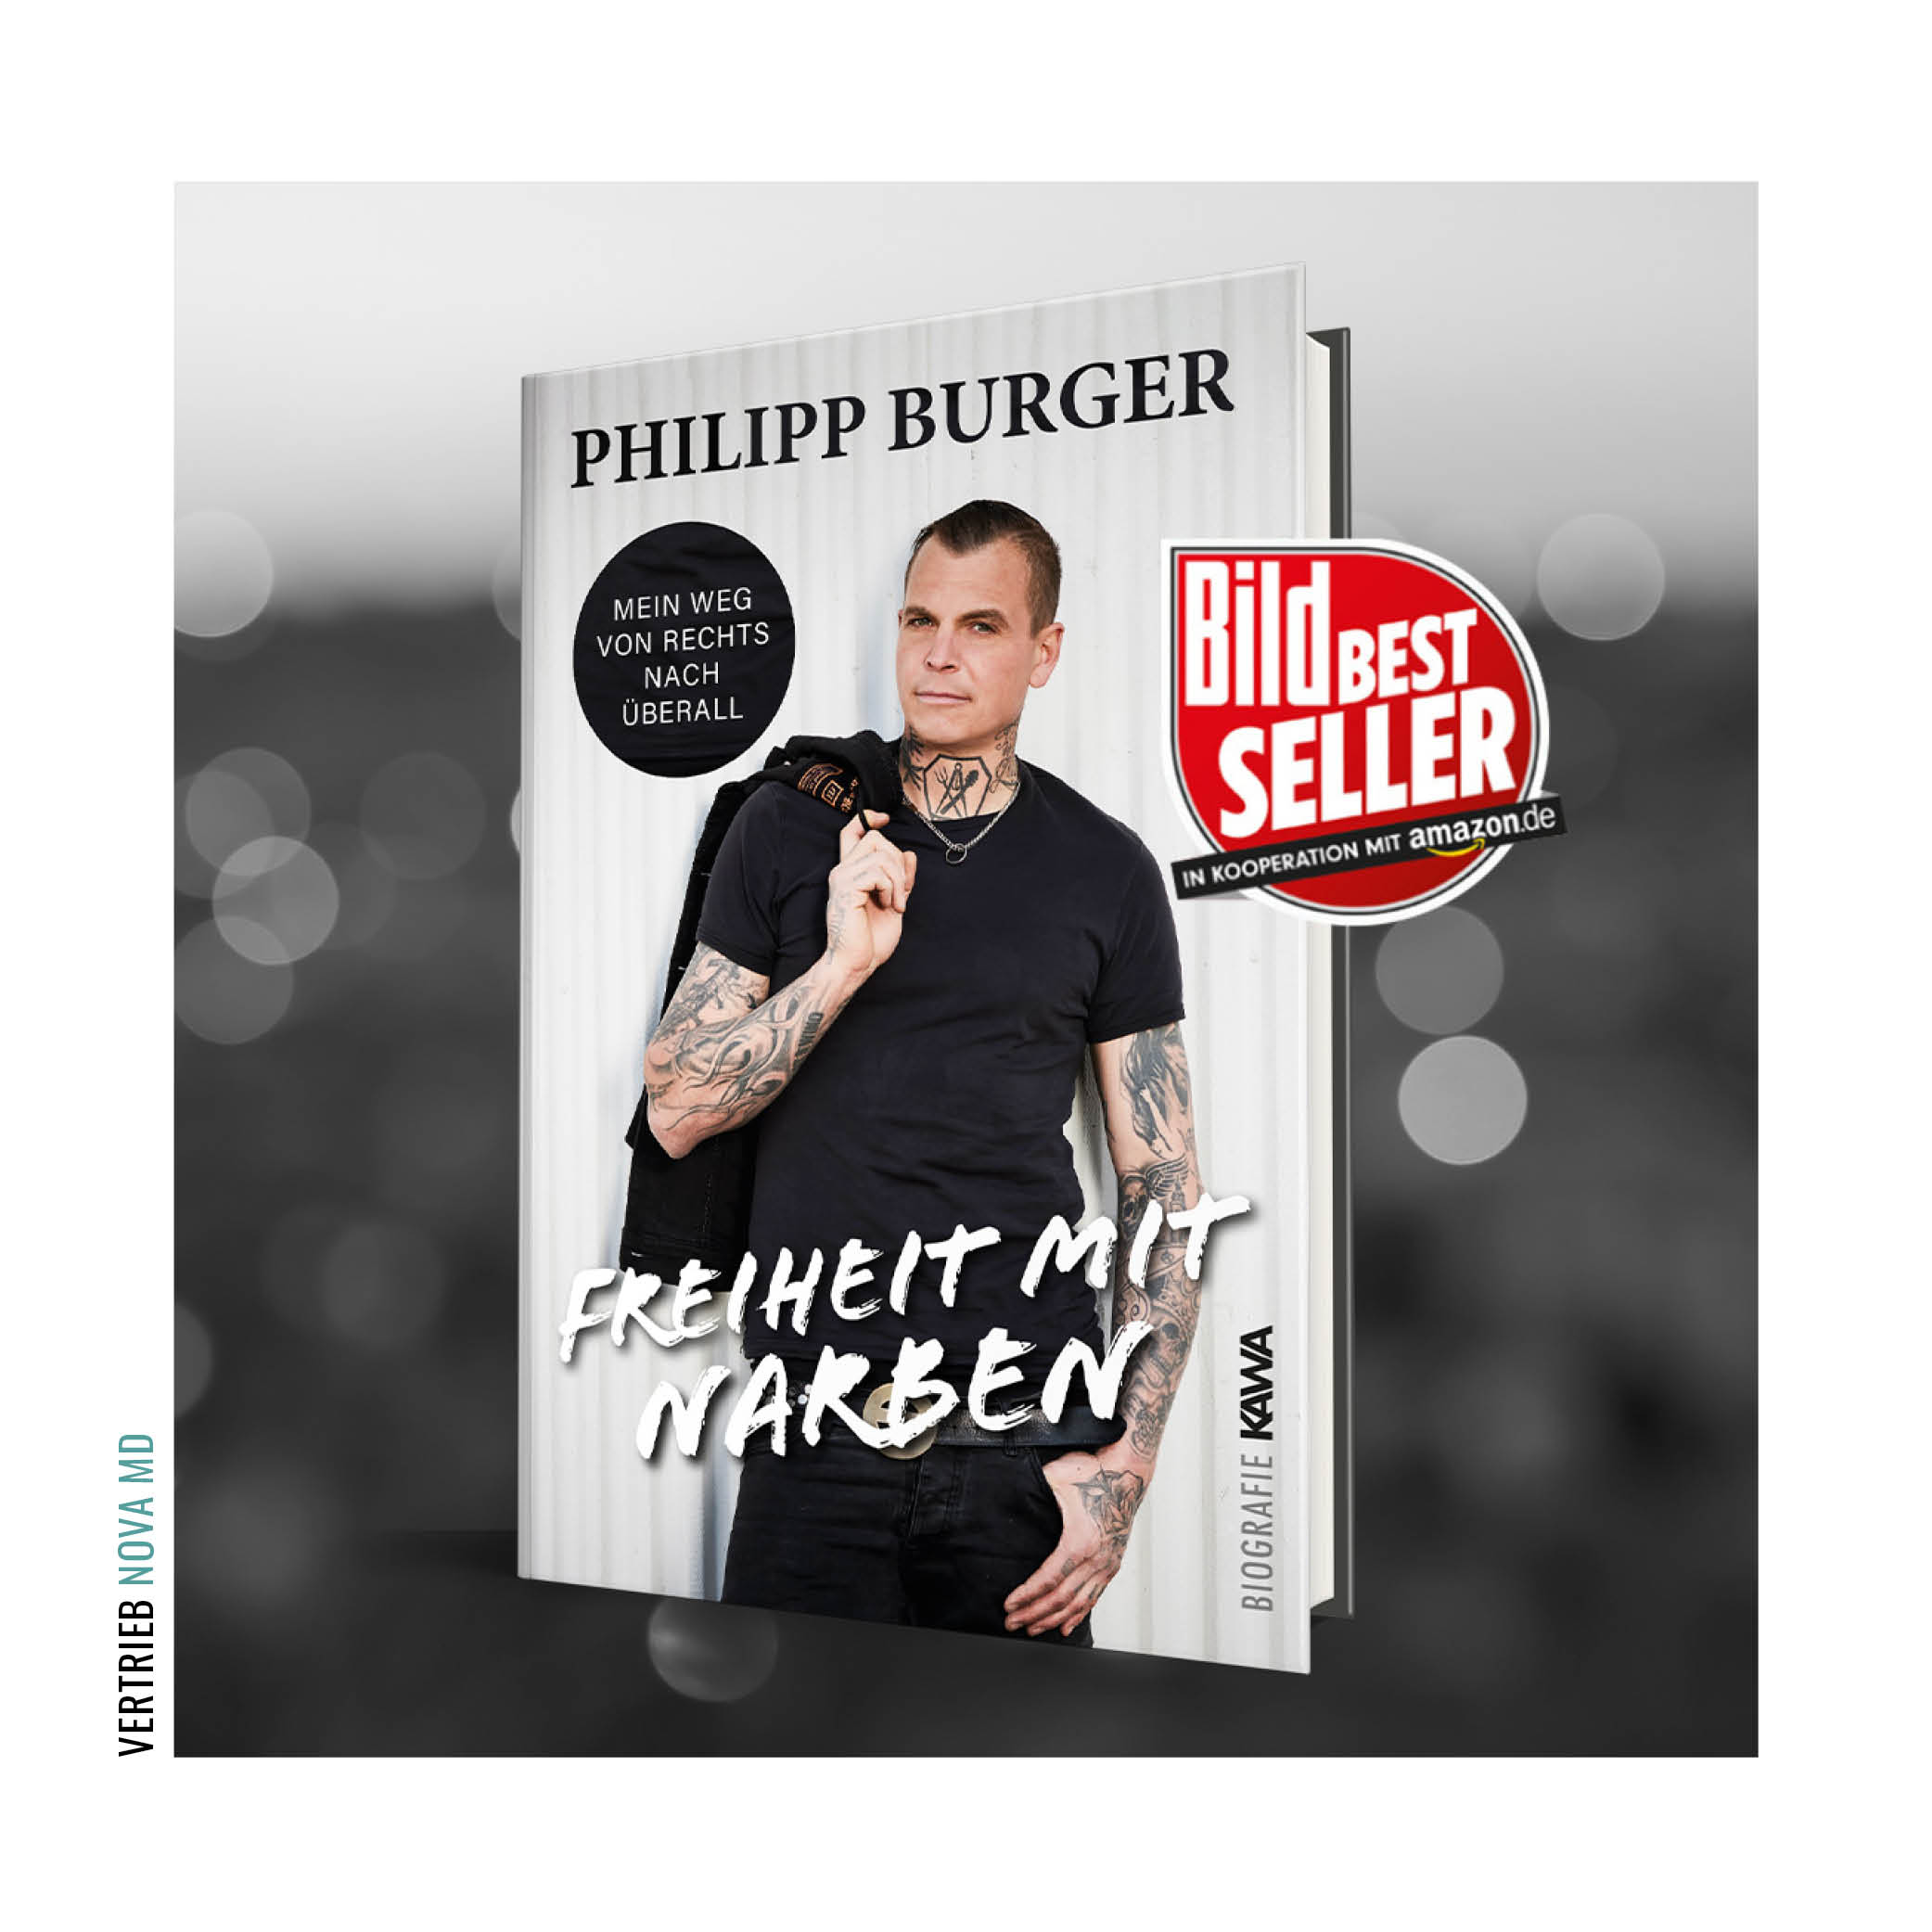 Buchcover  "Freiheit mit Narben:  Mein Weg von rechts nach überall" mit BILD Bestseller Auszeichnung